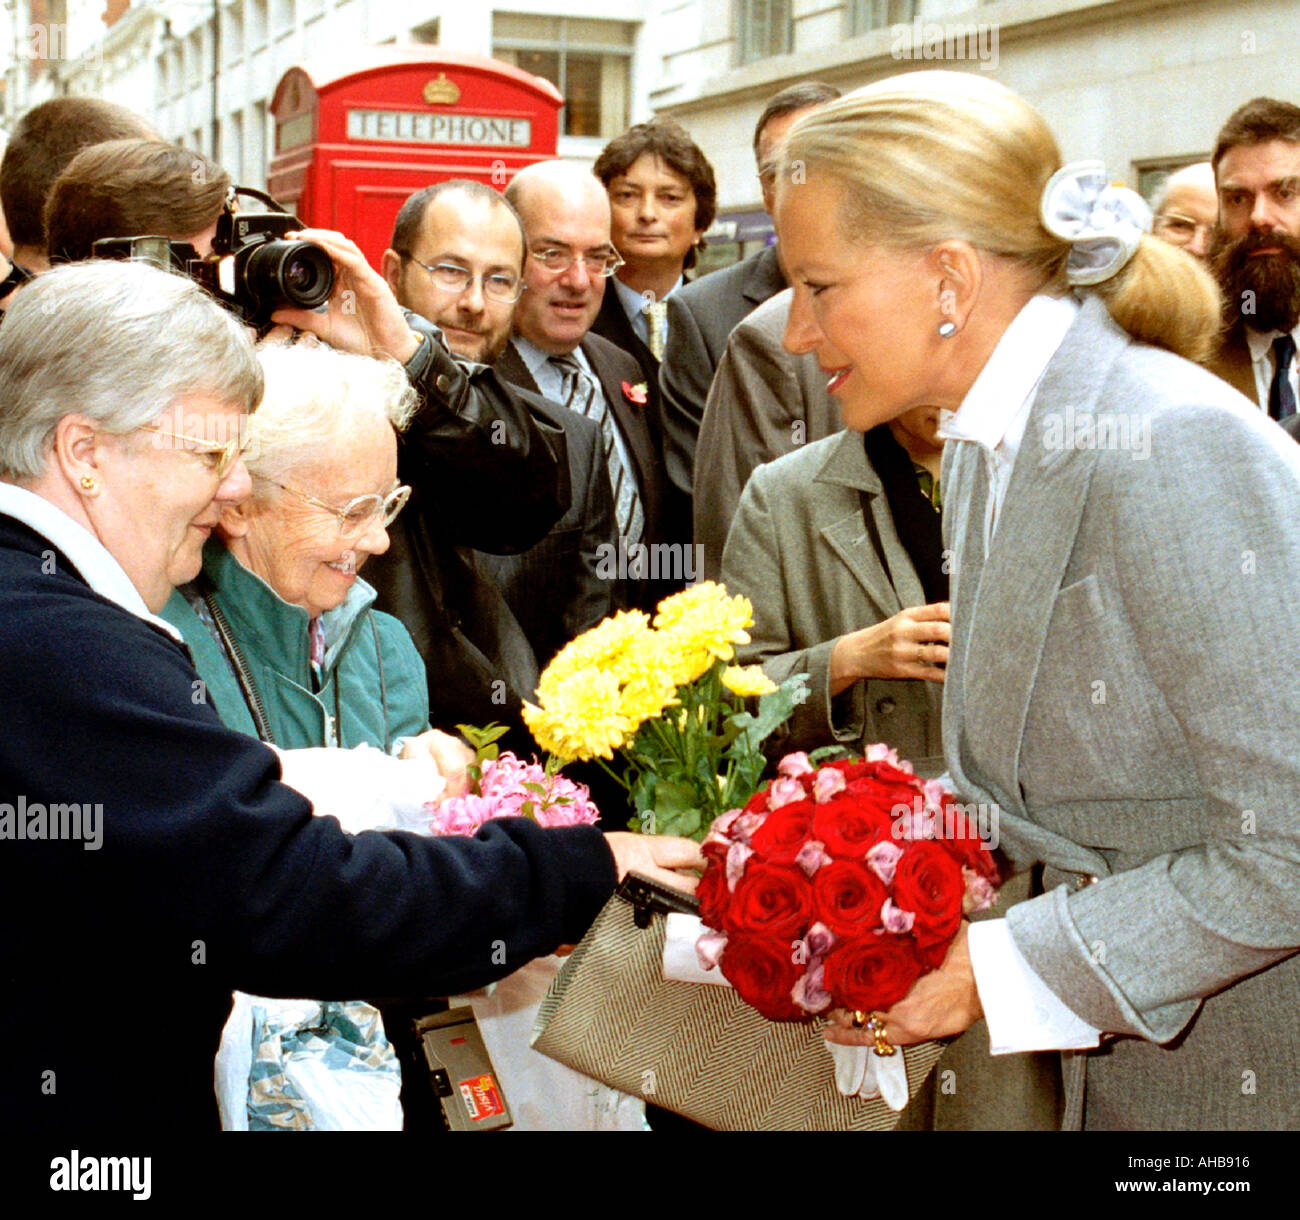 La princesse Michael de Kent d'être présenté avec des fleurs par de vieilles dames Londres/24 novembre 02 Banque D'Images